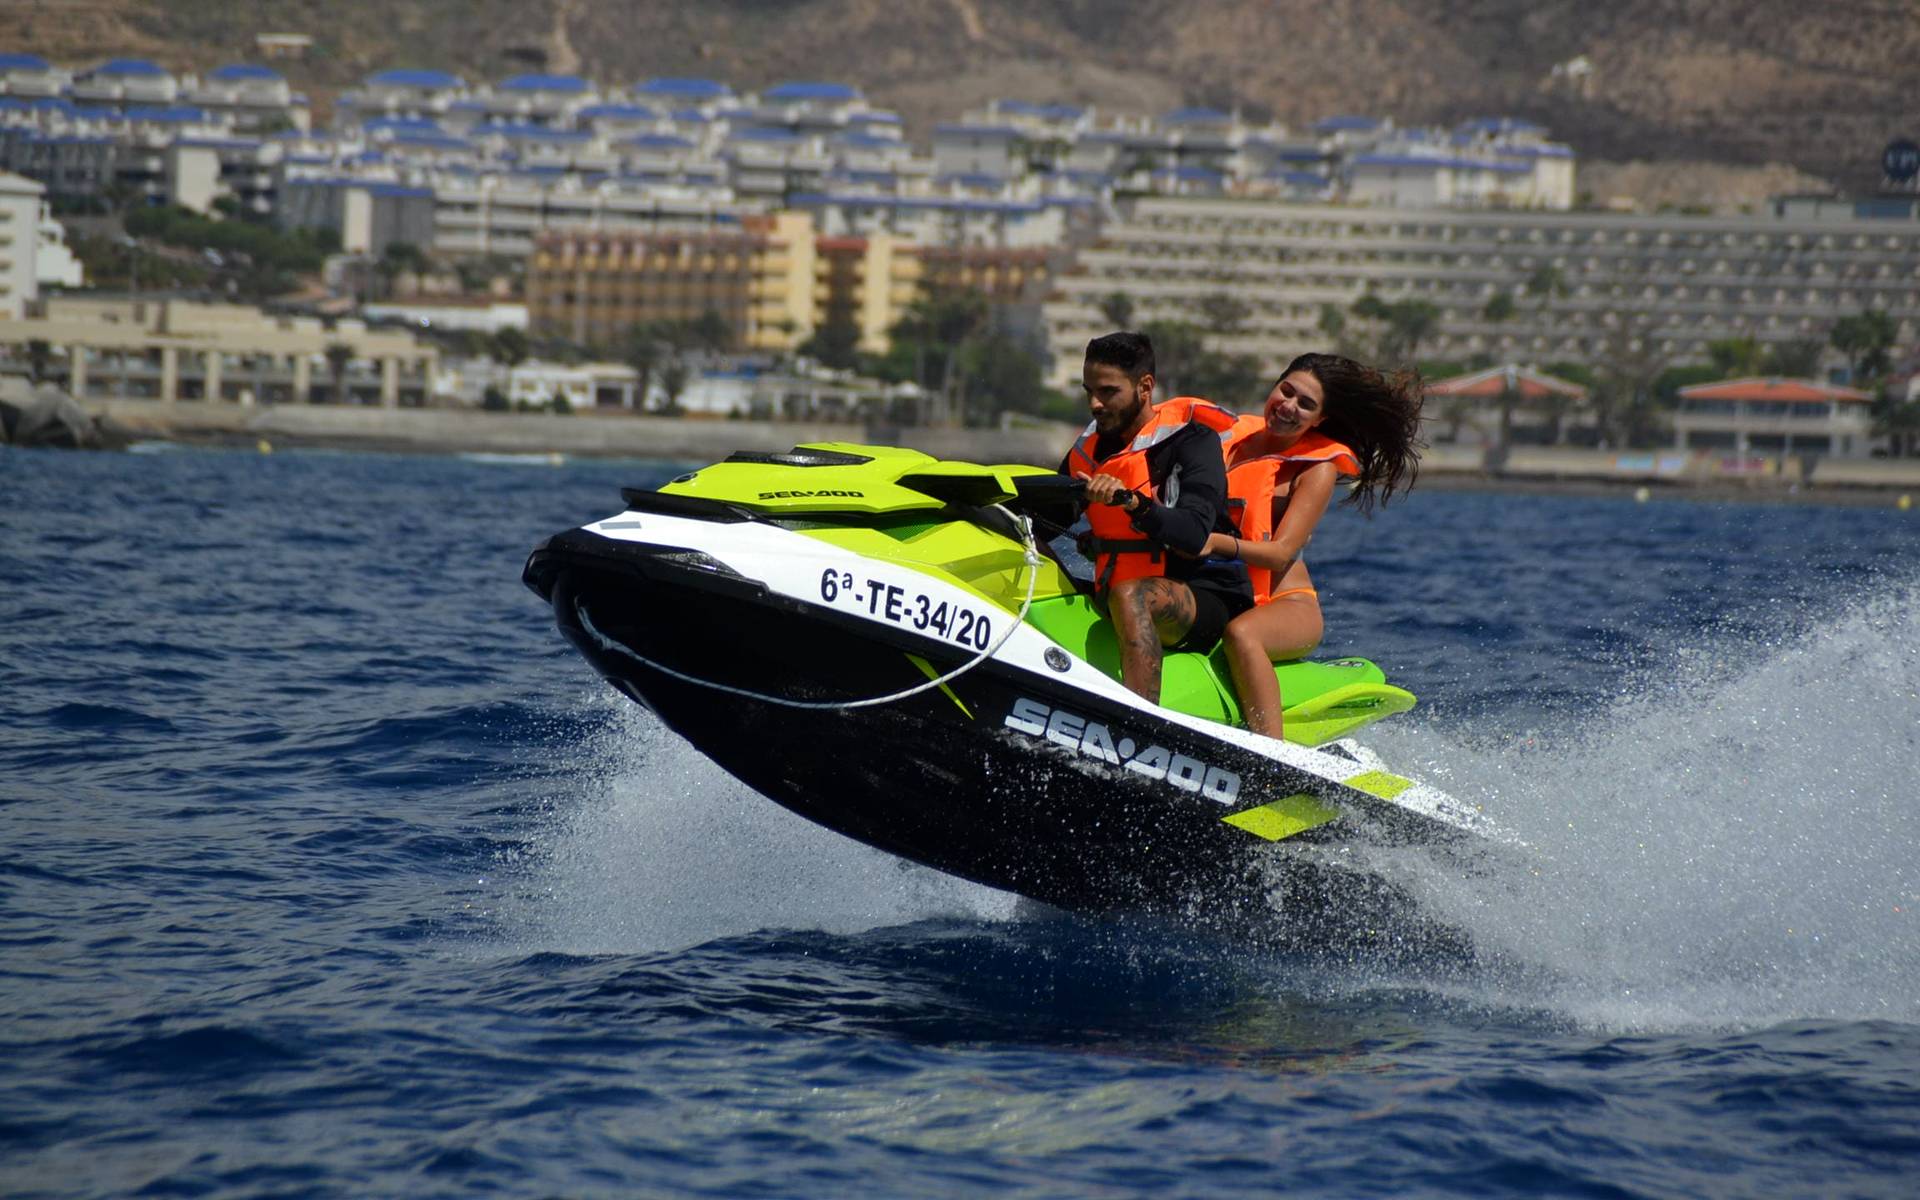 Doma las olas y explora lospaisajes de Tenerife en moto acuática&nbsp;